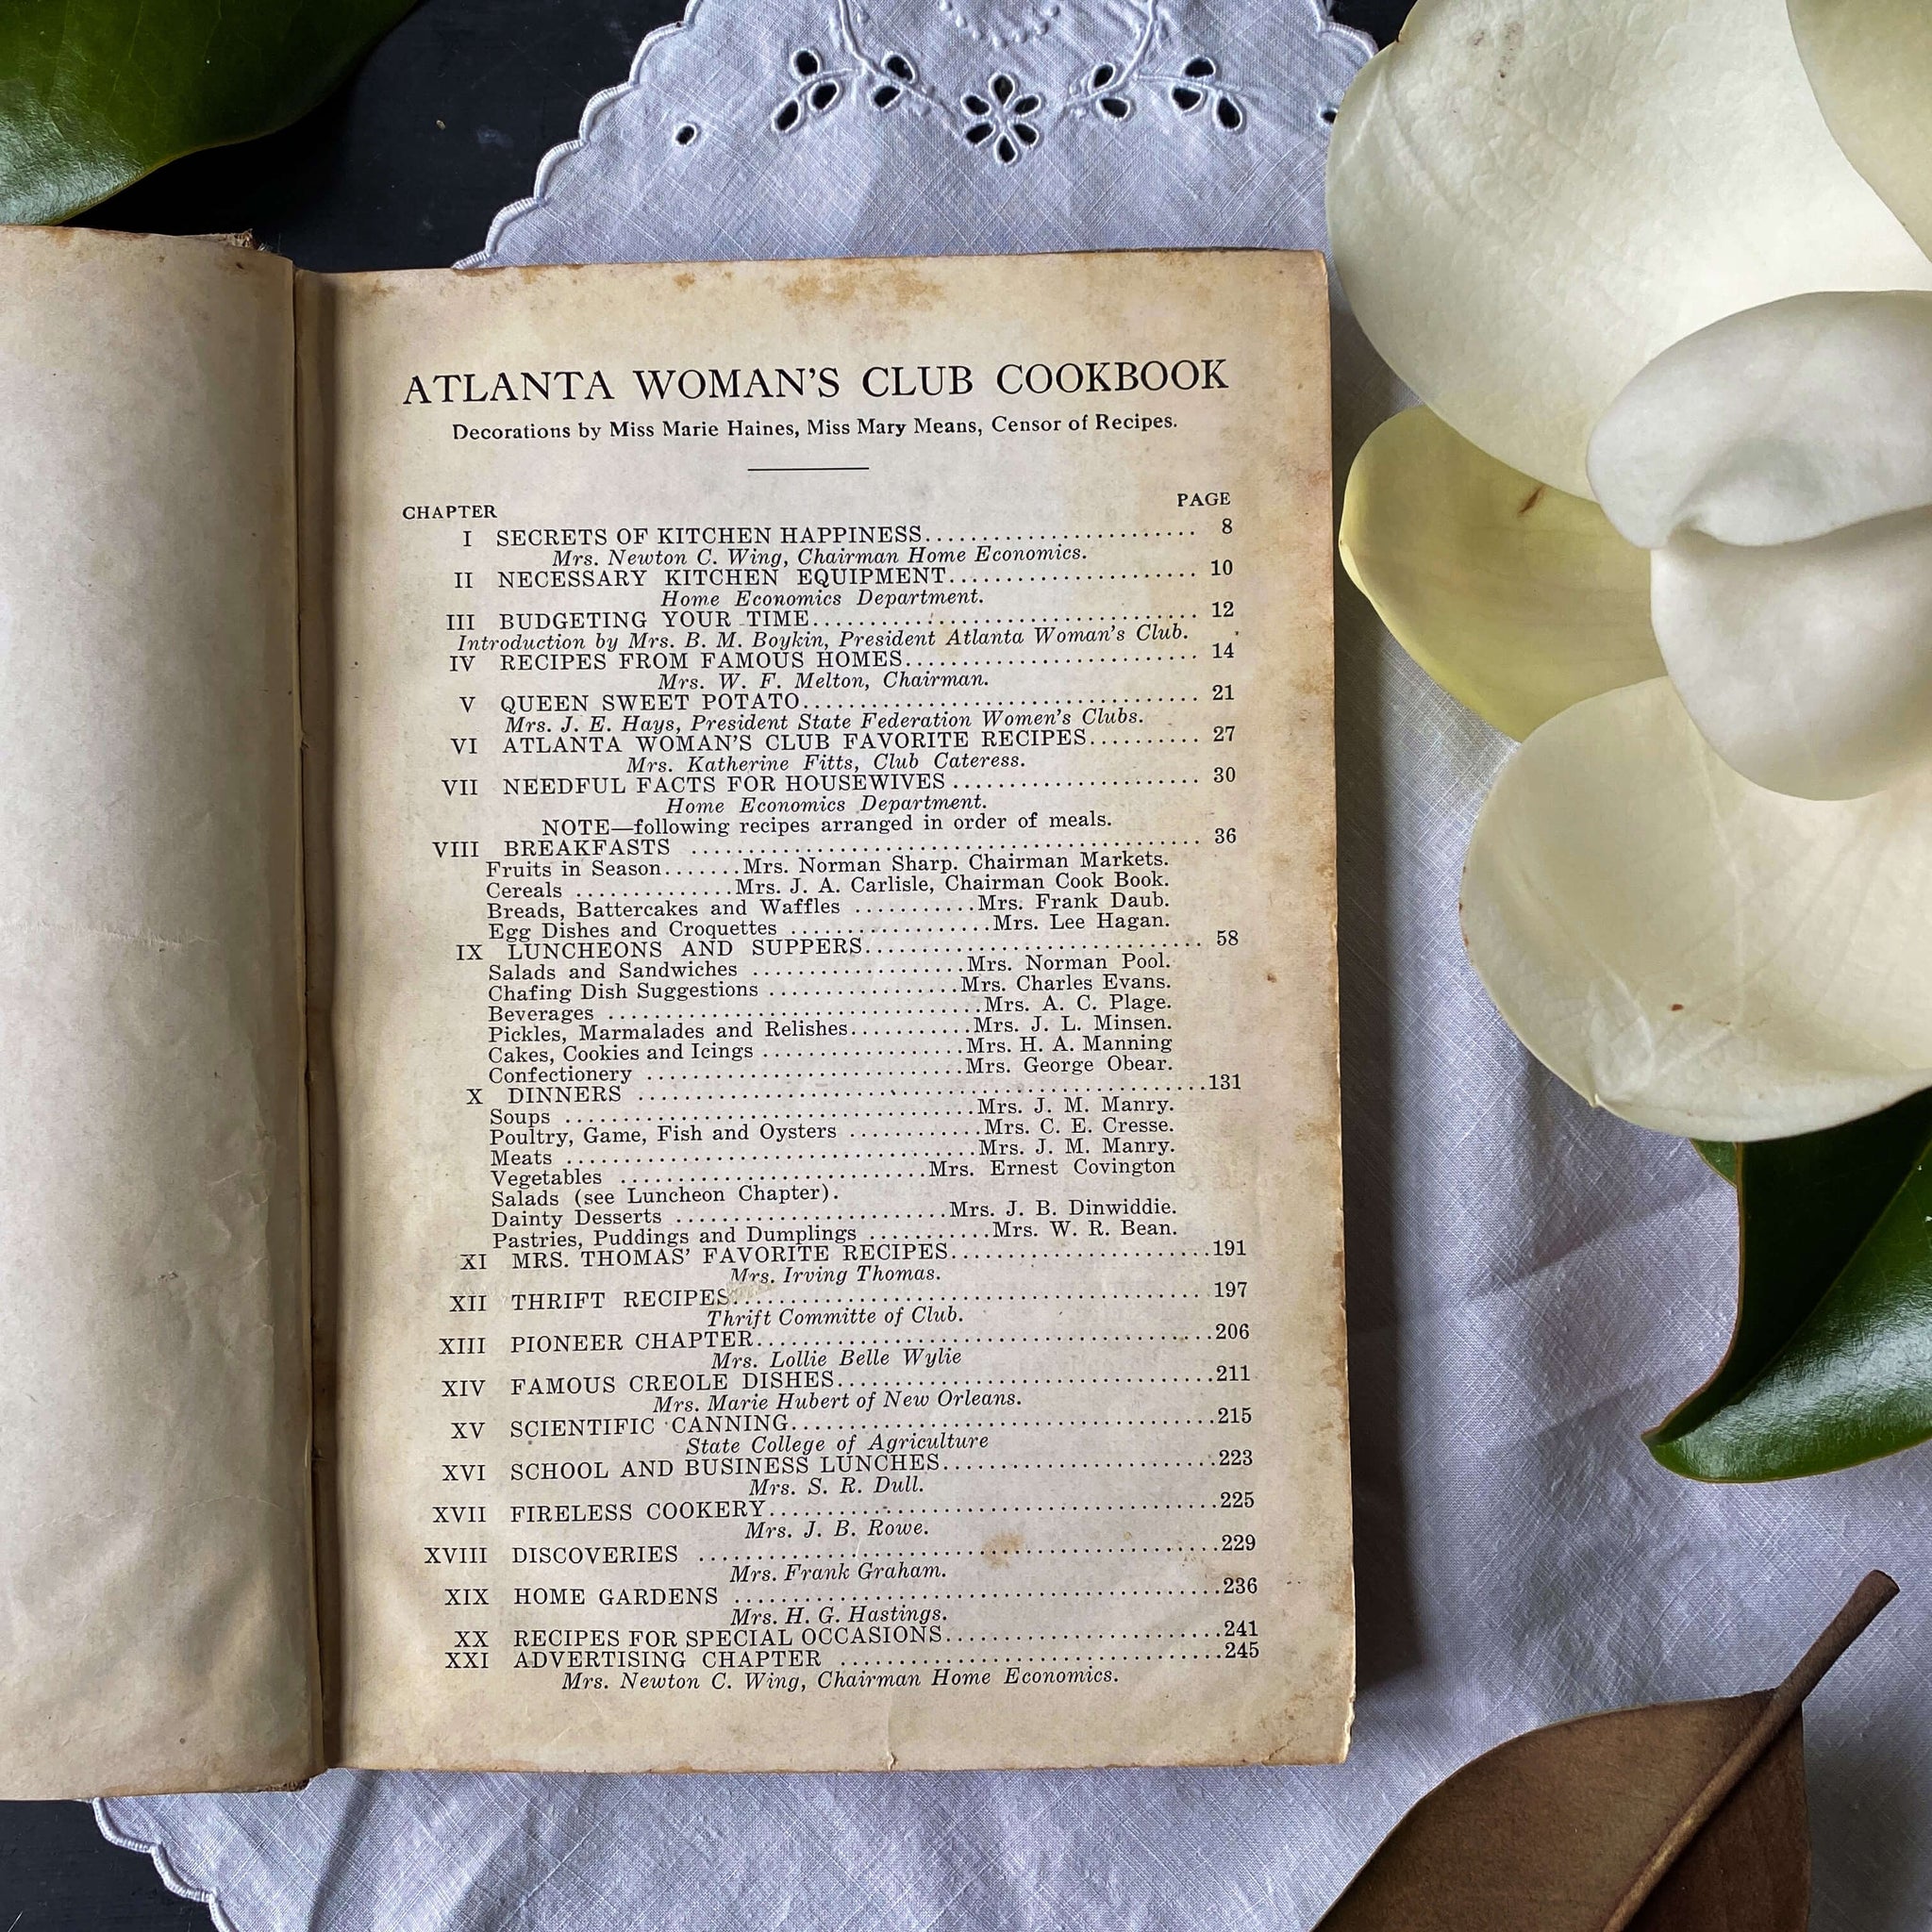 The Atlanta Woman's Club Cook Book circa 1921 - Very Rare